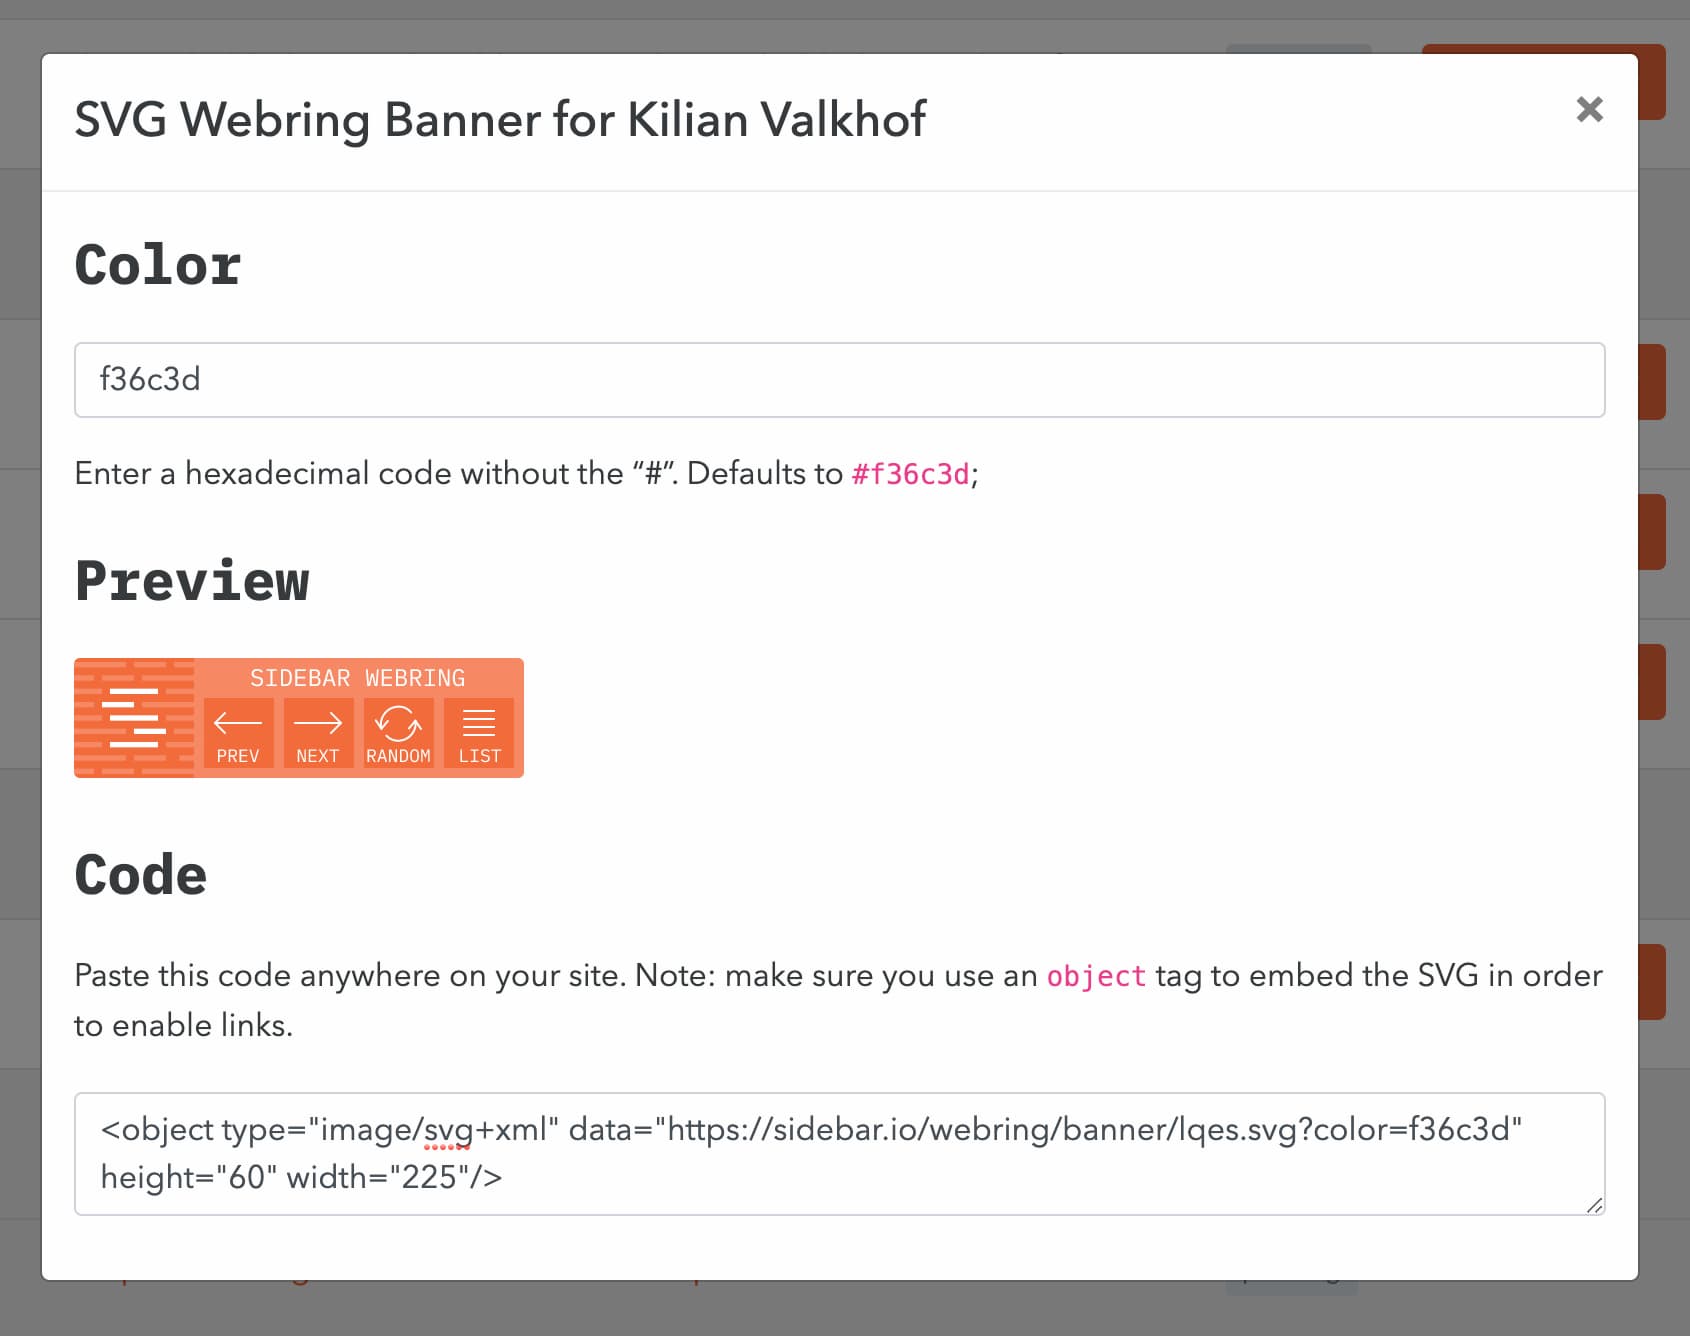 The Sidebar Webring banner 